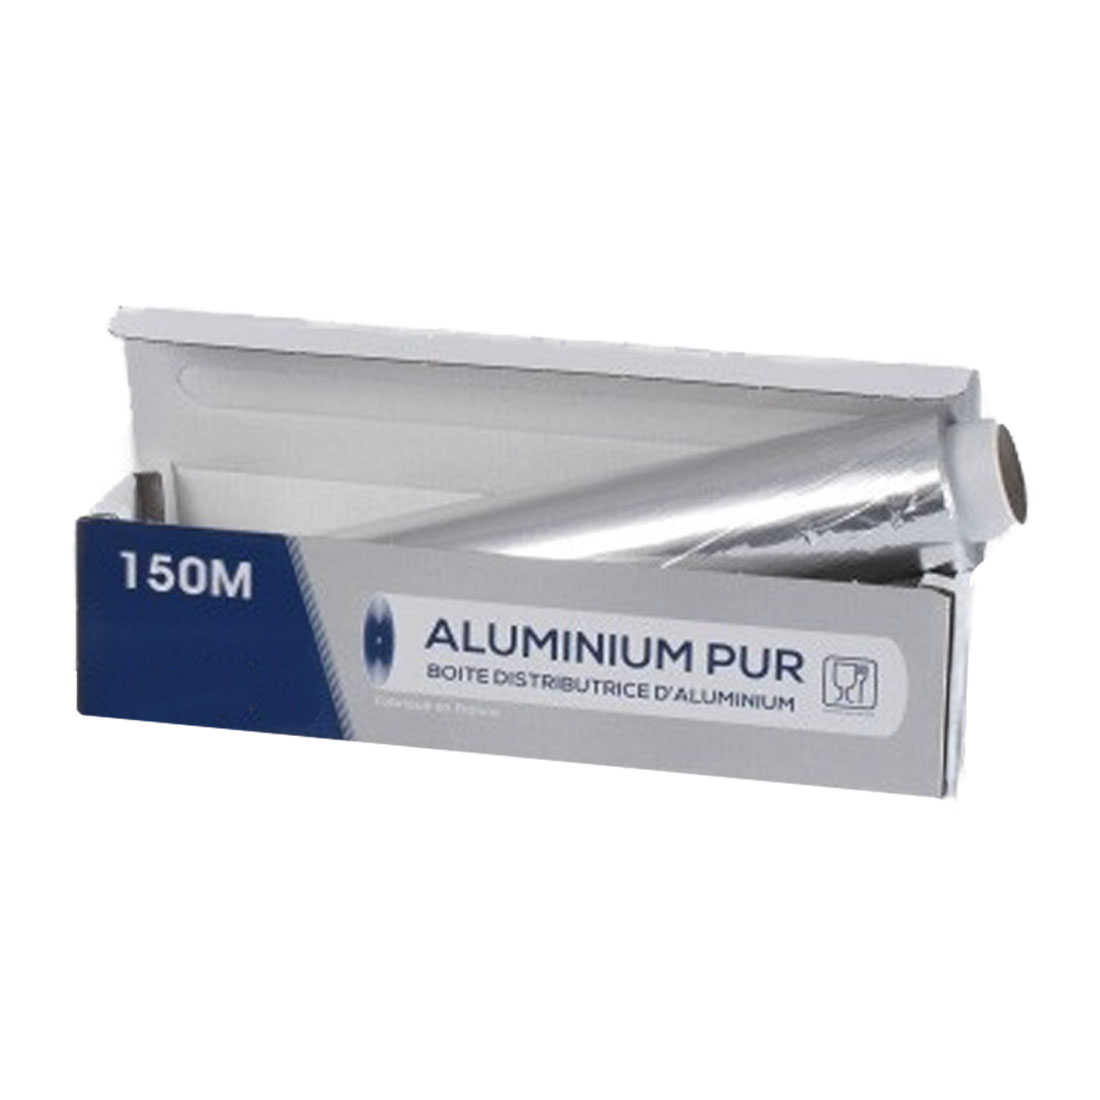 boite distributrice aluminium